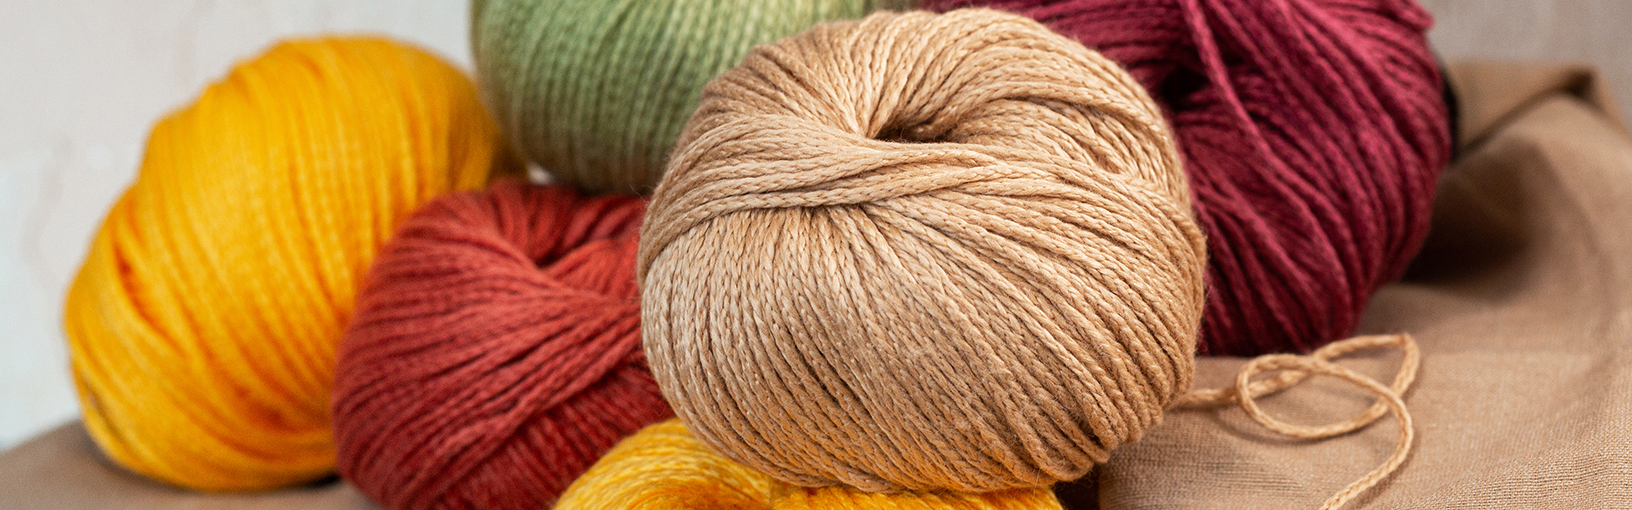 Garn af høj kvalitet til strikning, hækling og filtning LANA GROSSA<br> uld & garn | Nyheder